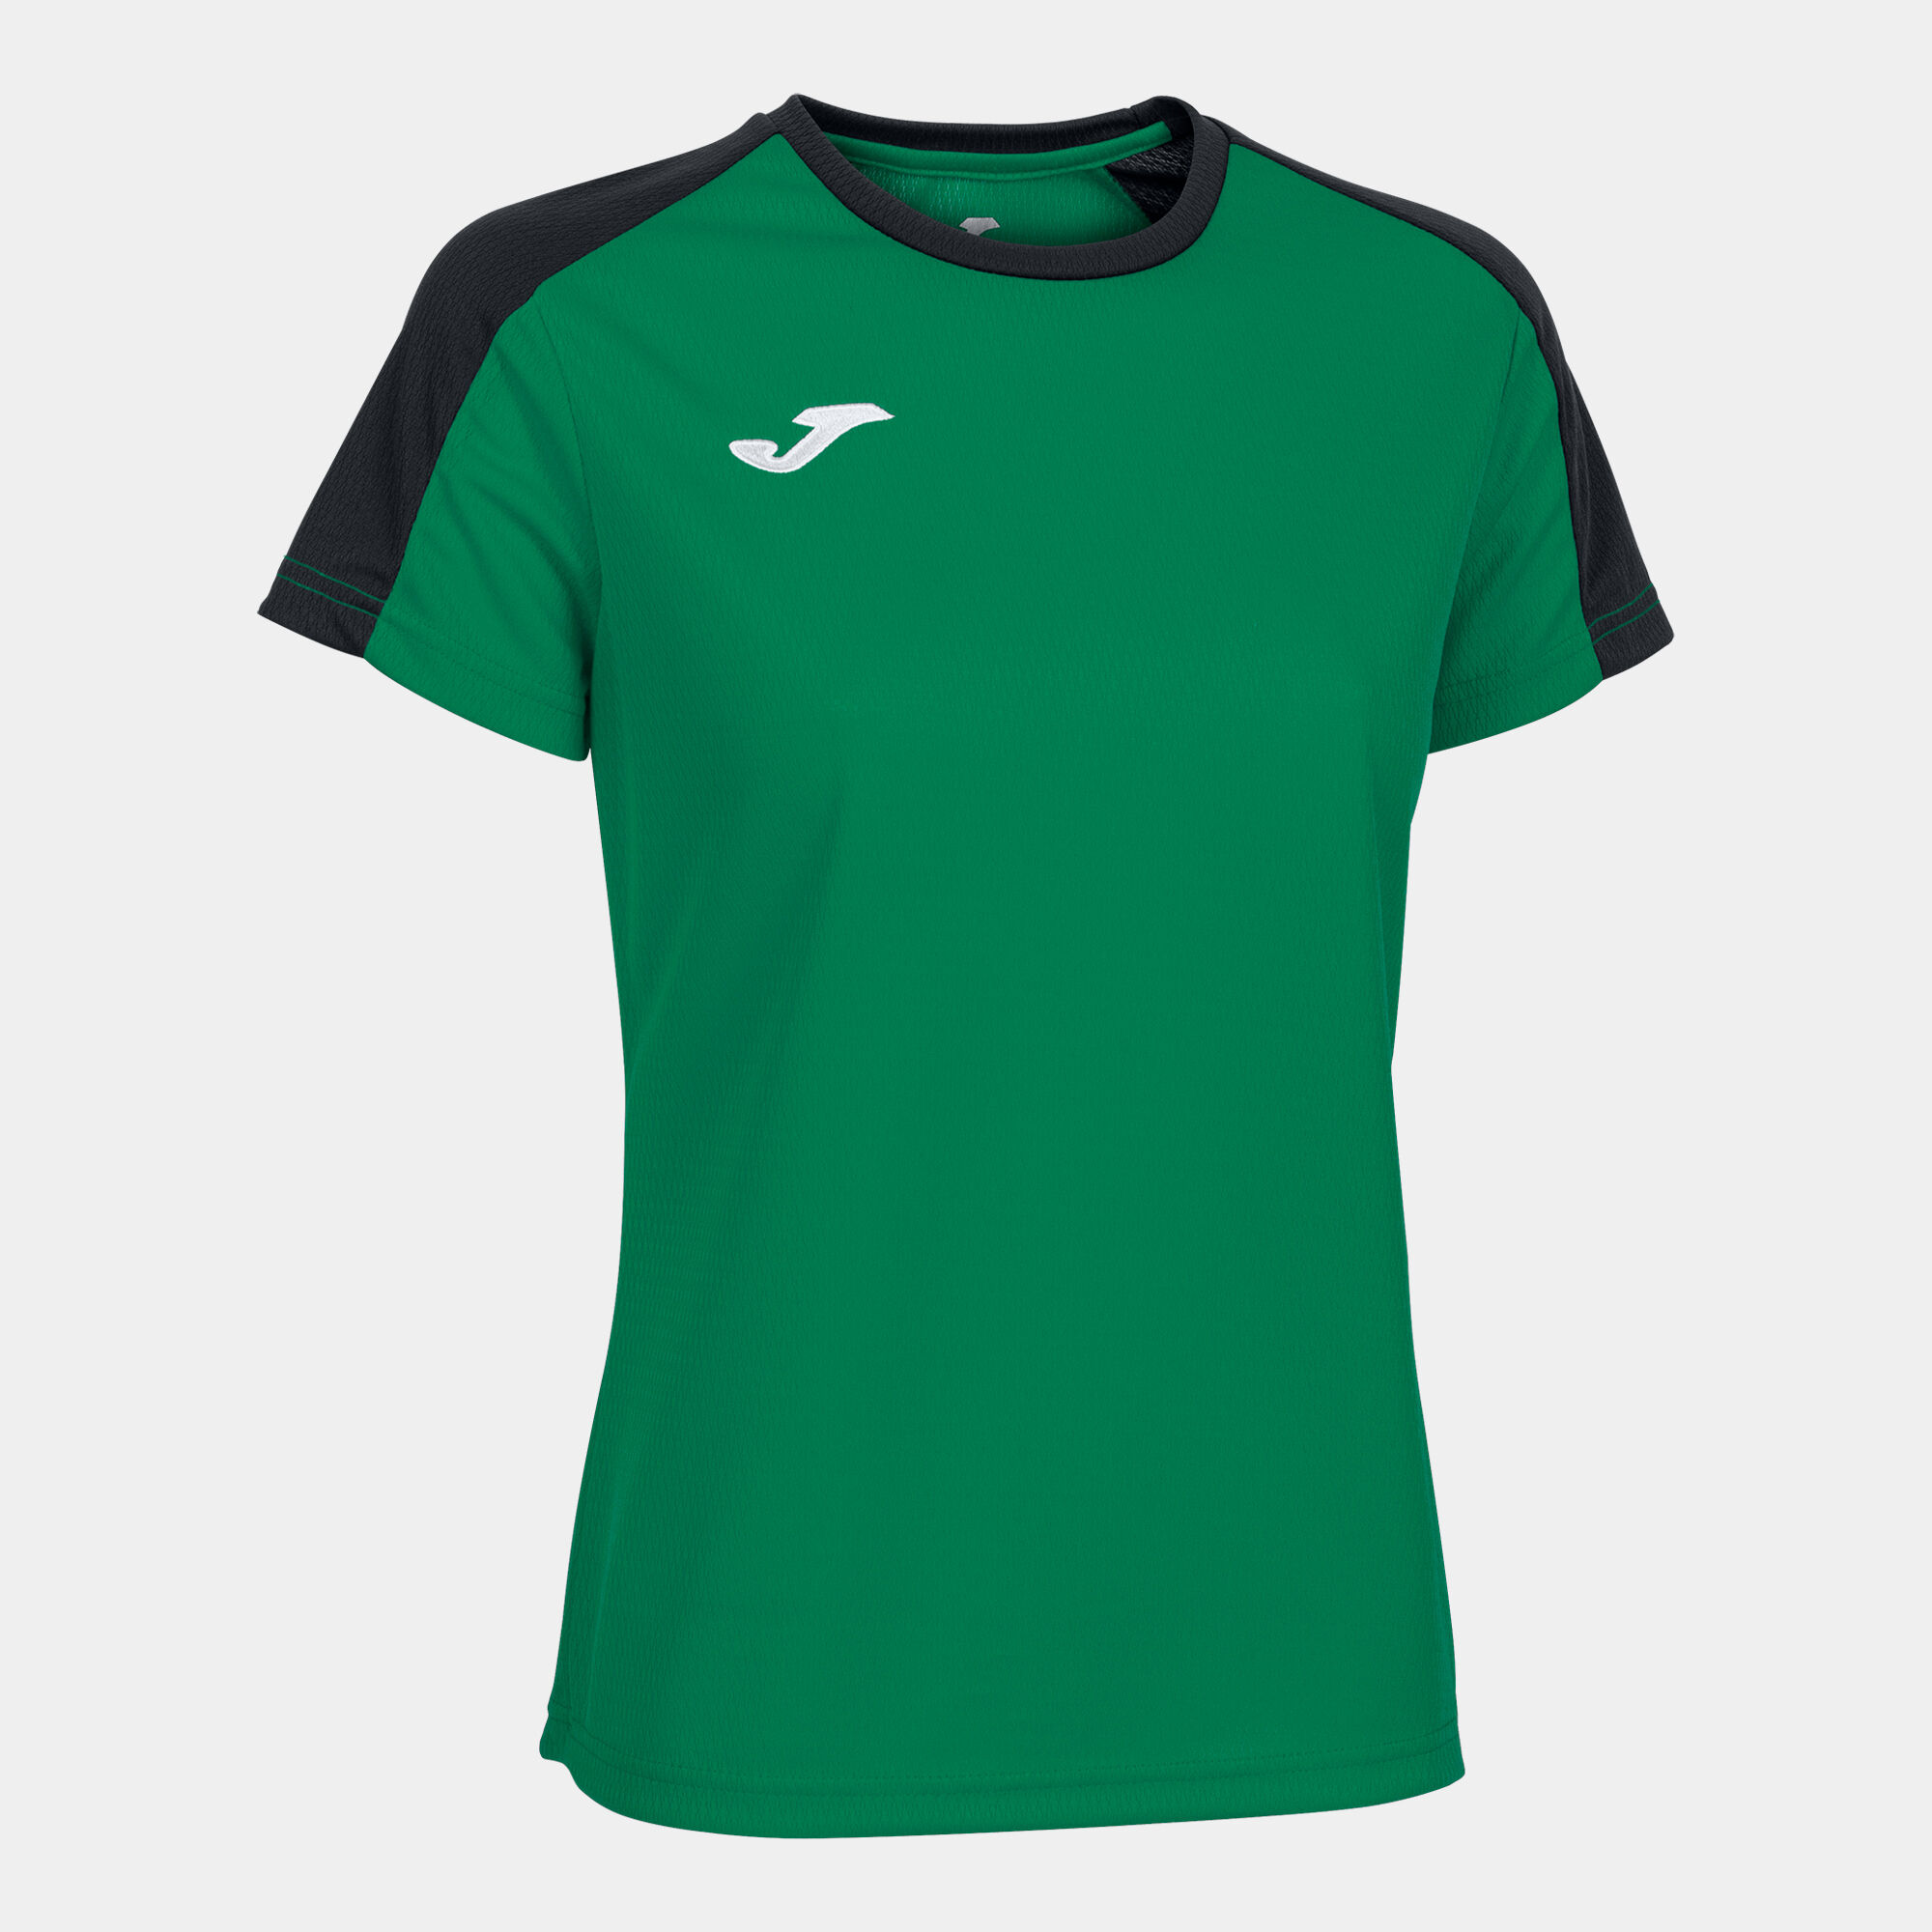 Camiseta manga corta mujer Eco Championship verde negro